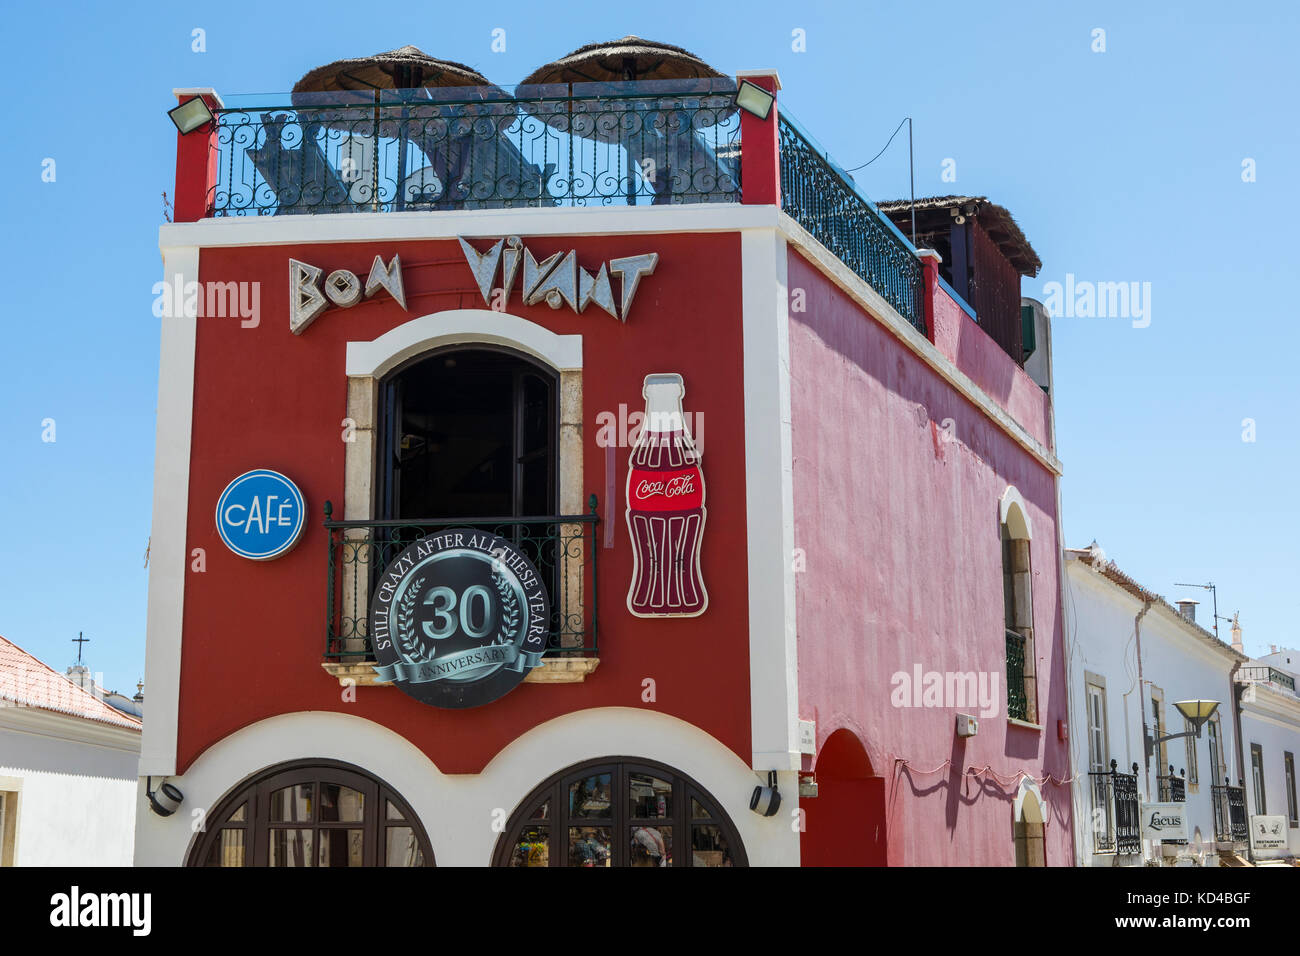 Lagos, Portogallo - 10 settembre 2017: vista esterna del famoso bon vivant bar, situato nel centro storico della città vecchia di Lagos in Portogallo, il 10 settembre Foto Stock